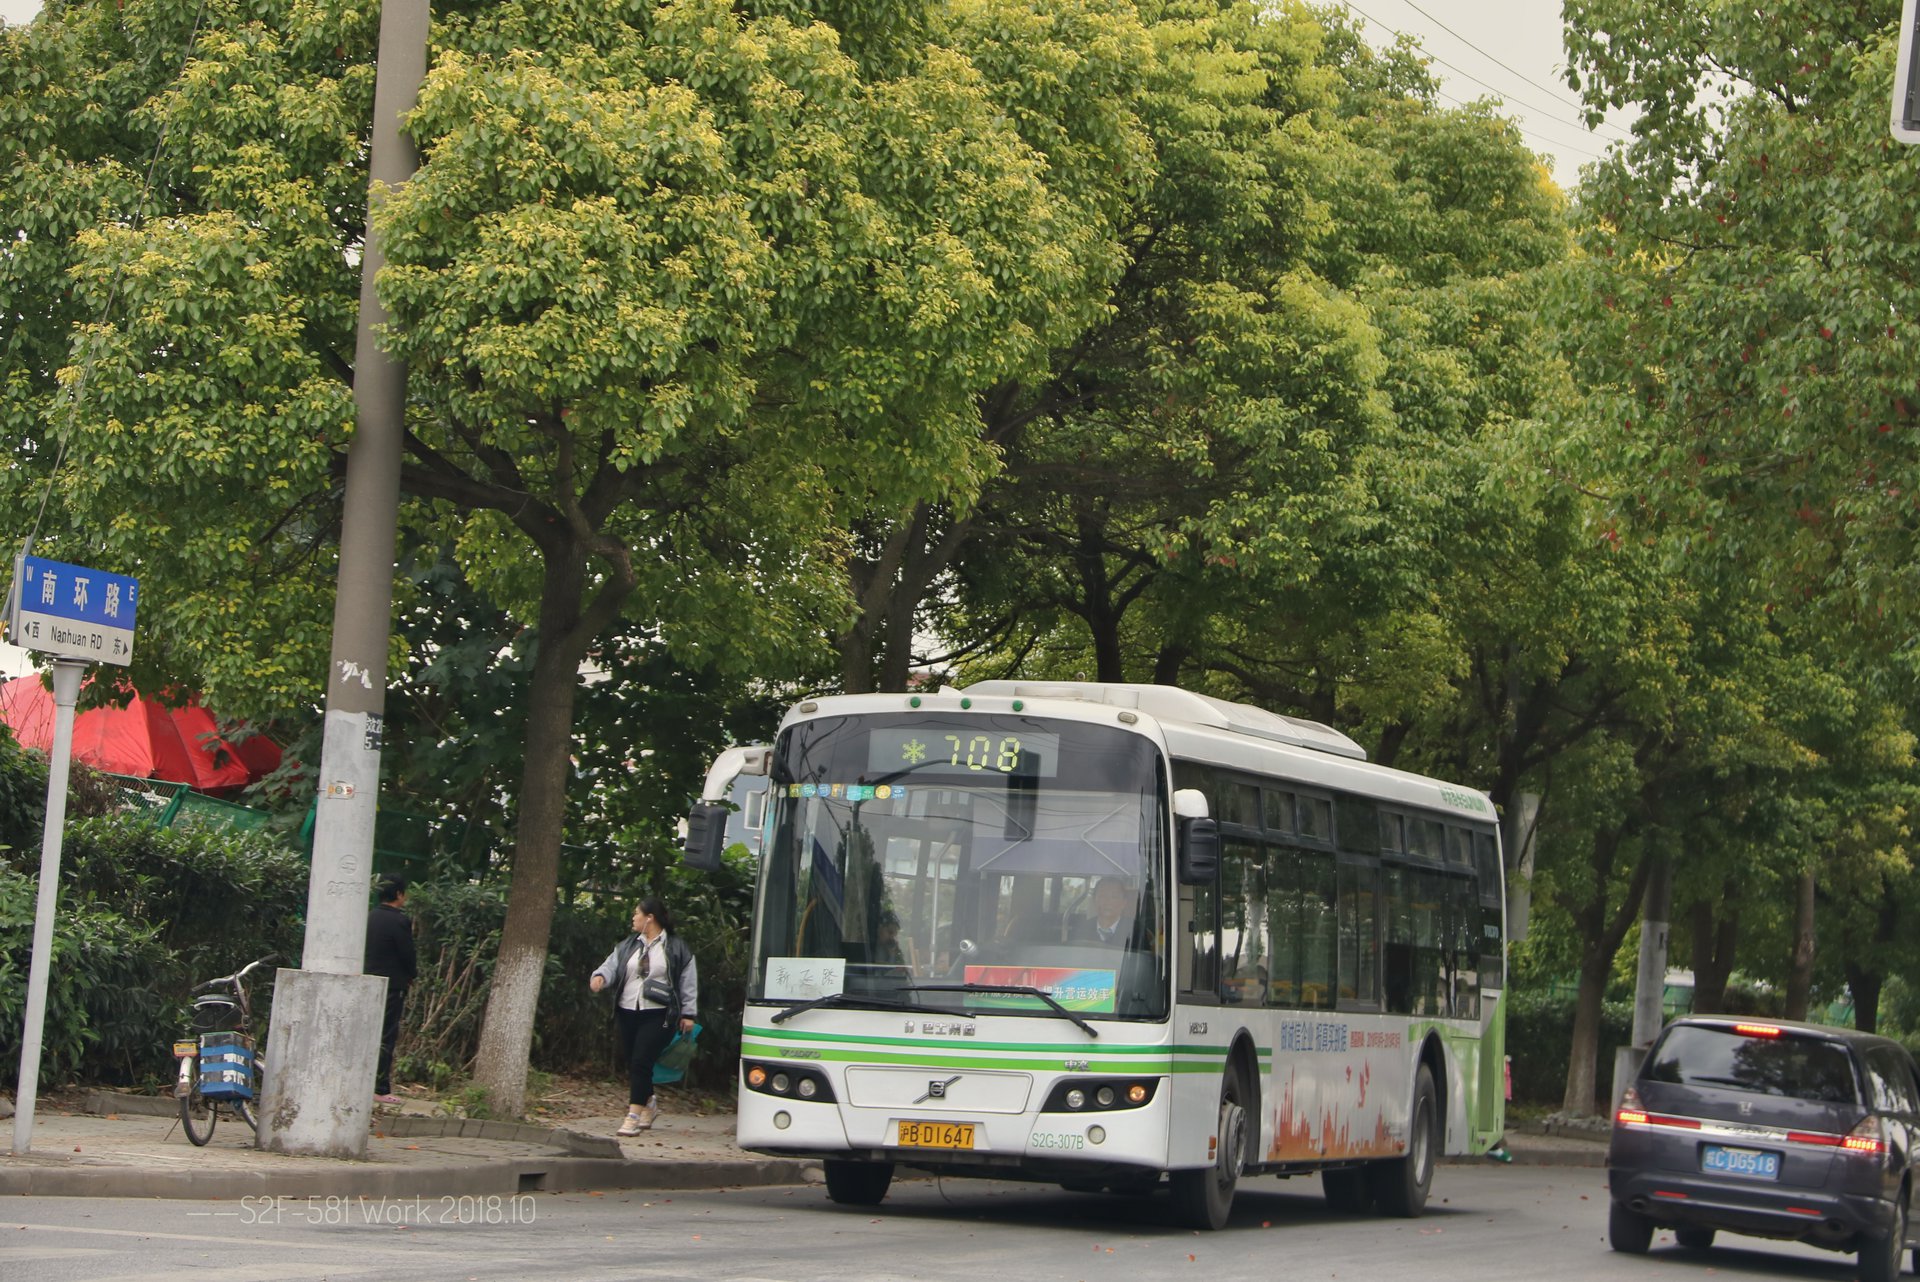 上海公交